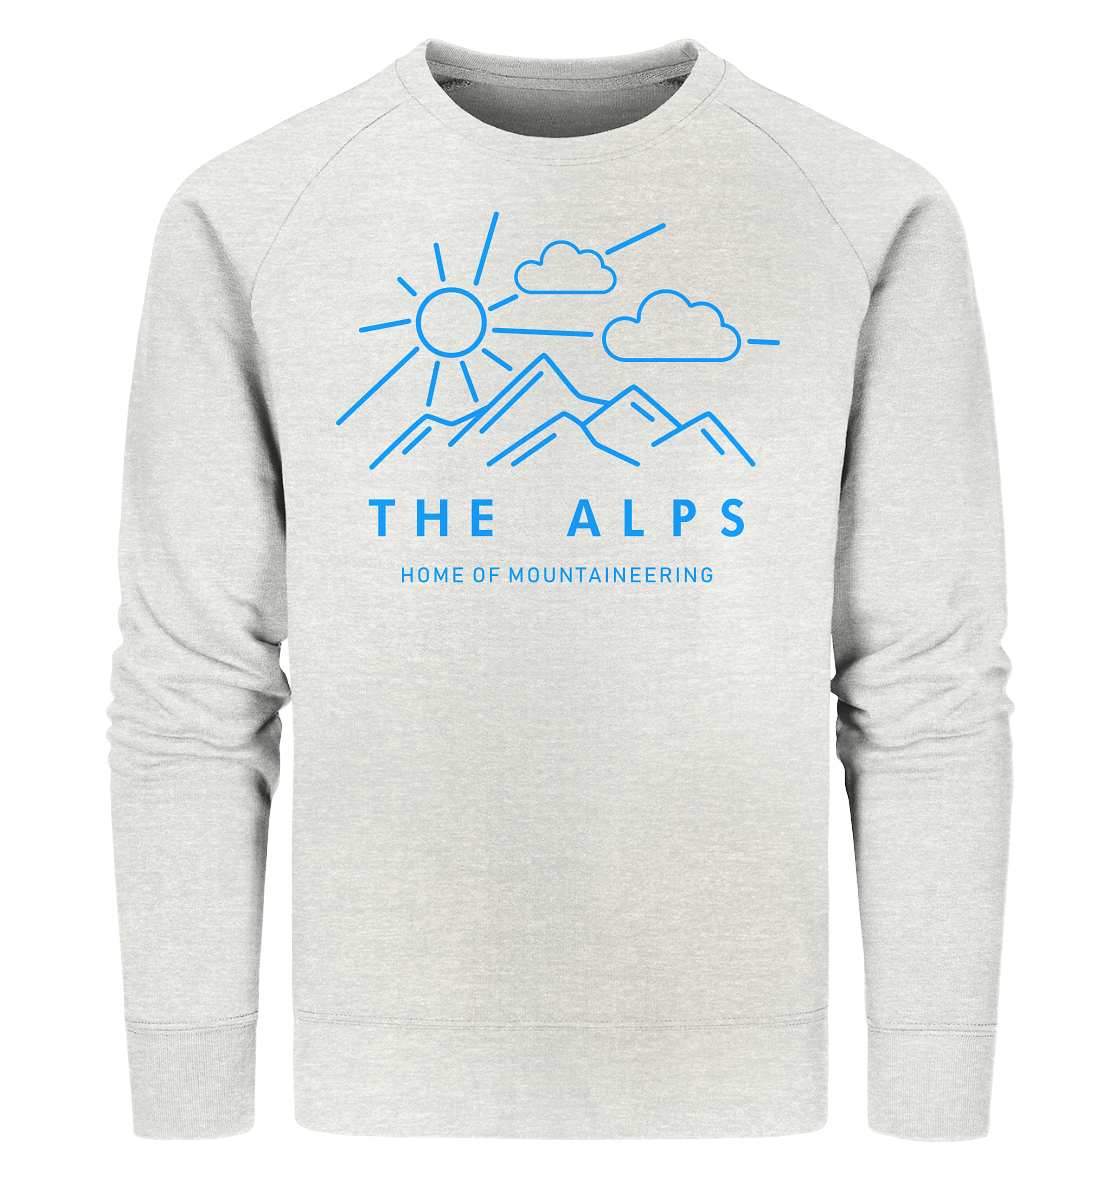 Home of Mountaineering - Organic Sweatshirt